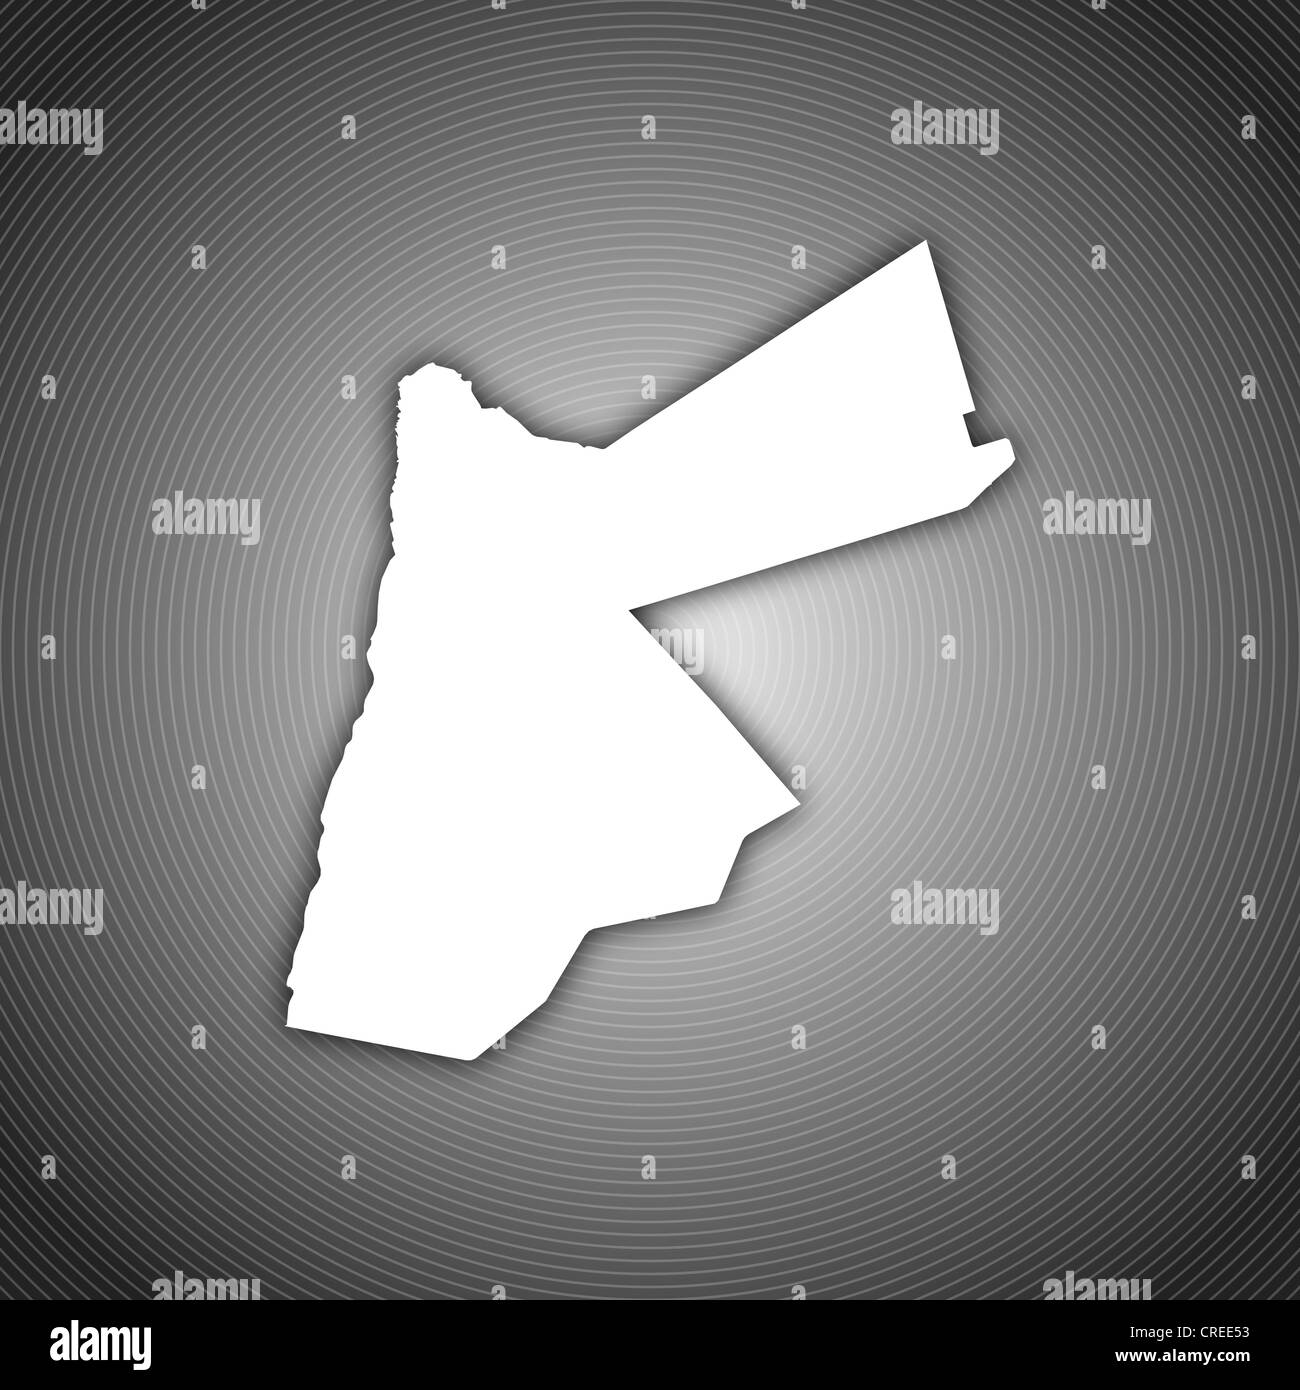 Mappa Politico della Giordania con i vari governatorati. Foto Stock